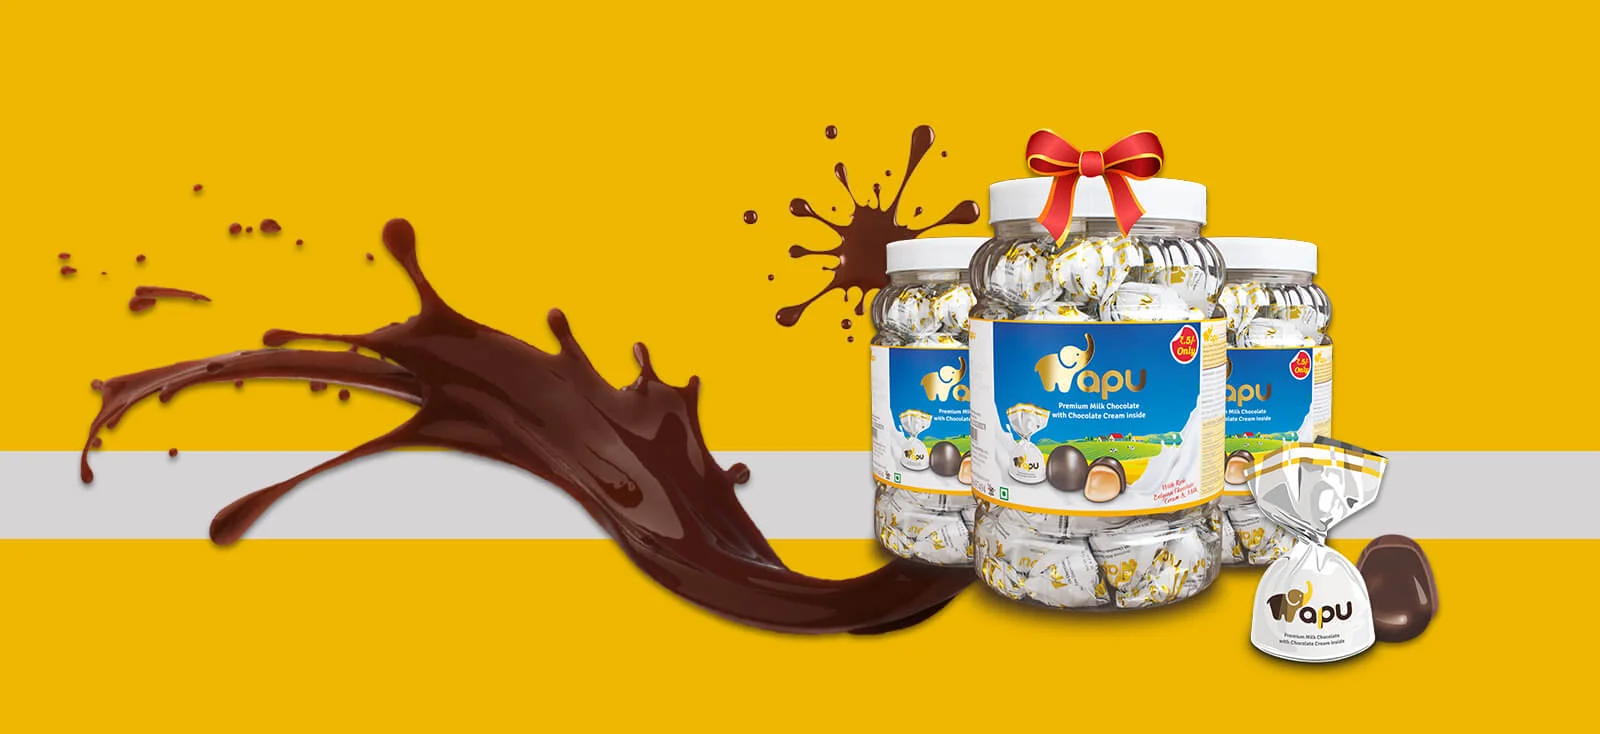 Apu Premium Cream Filled Chocolates